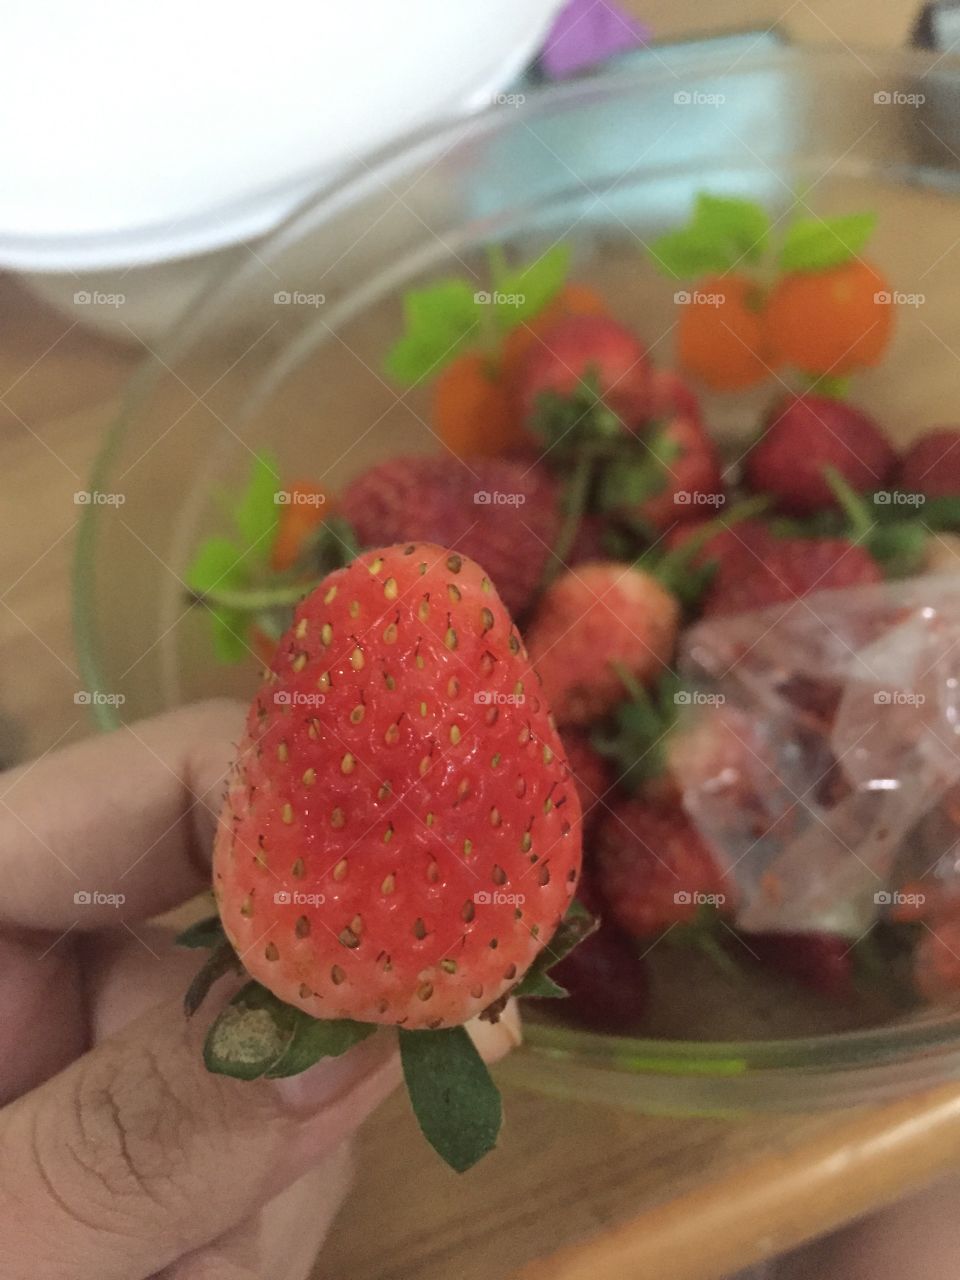 Strawberries
